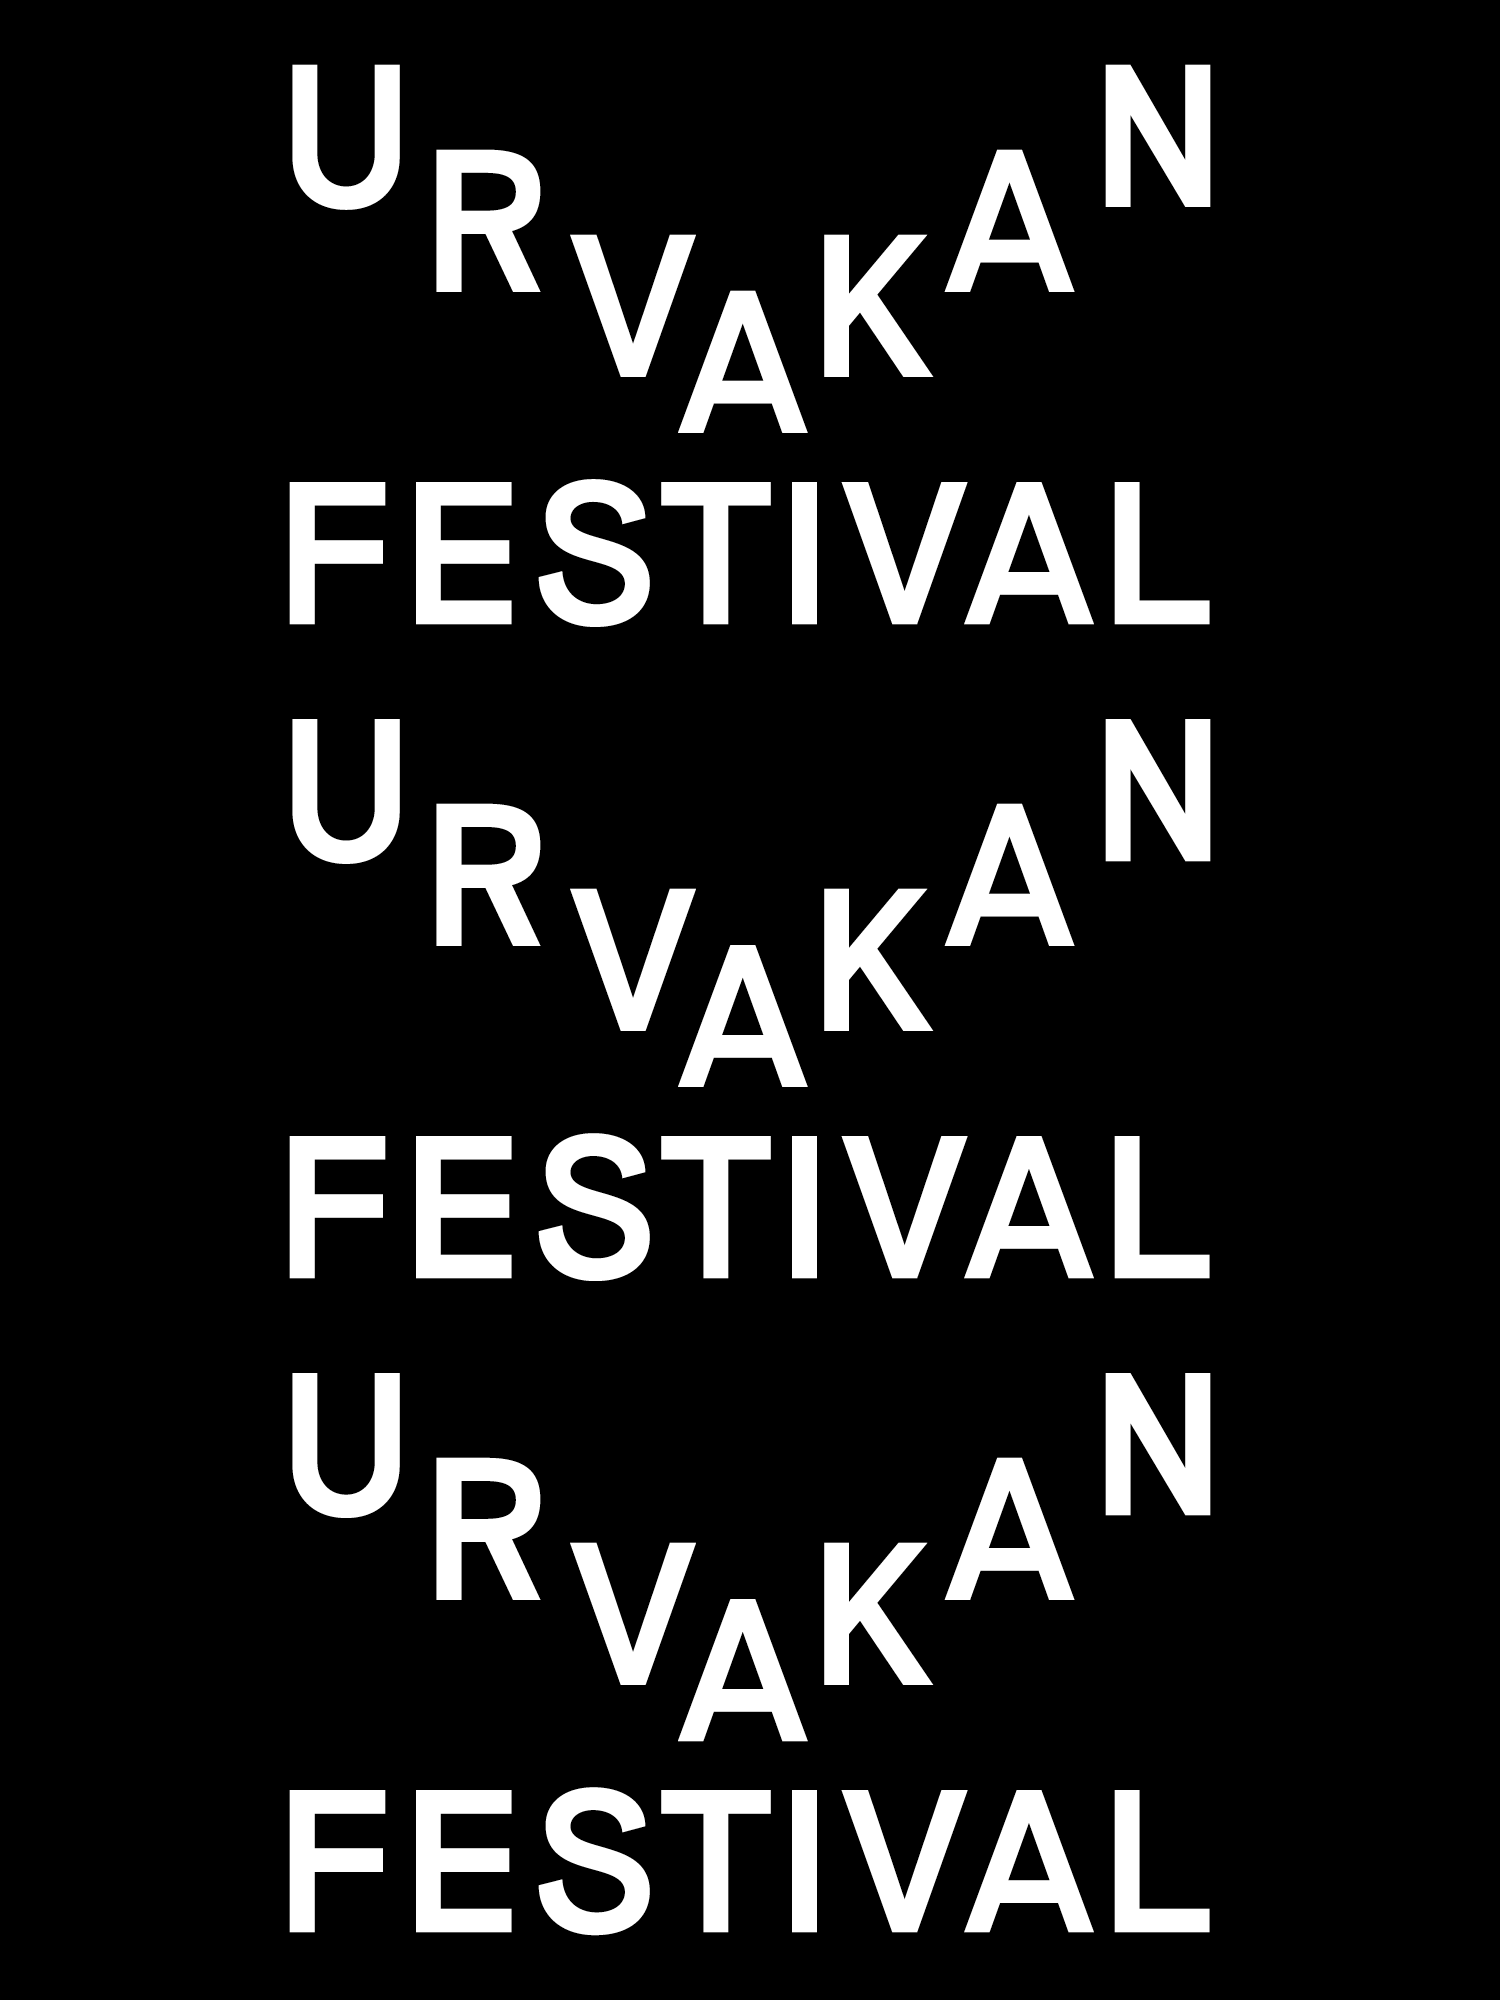 [POSTPONED] Urvakan Festival 2022 - フライヤー表